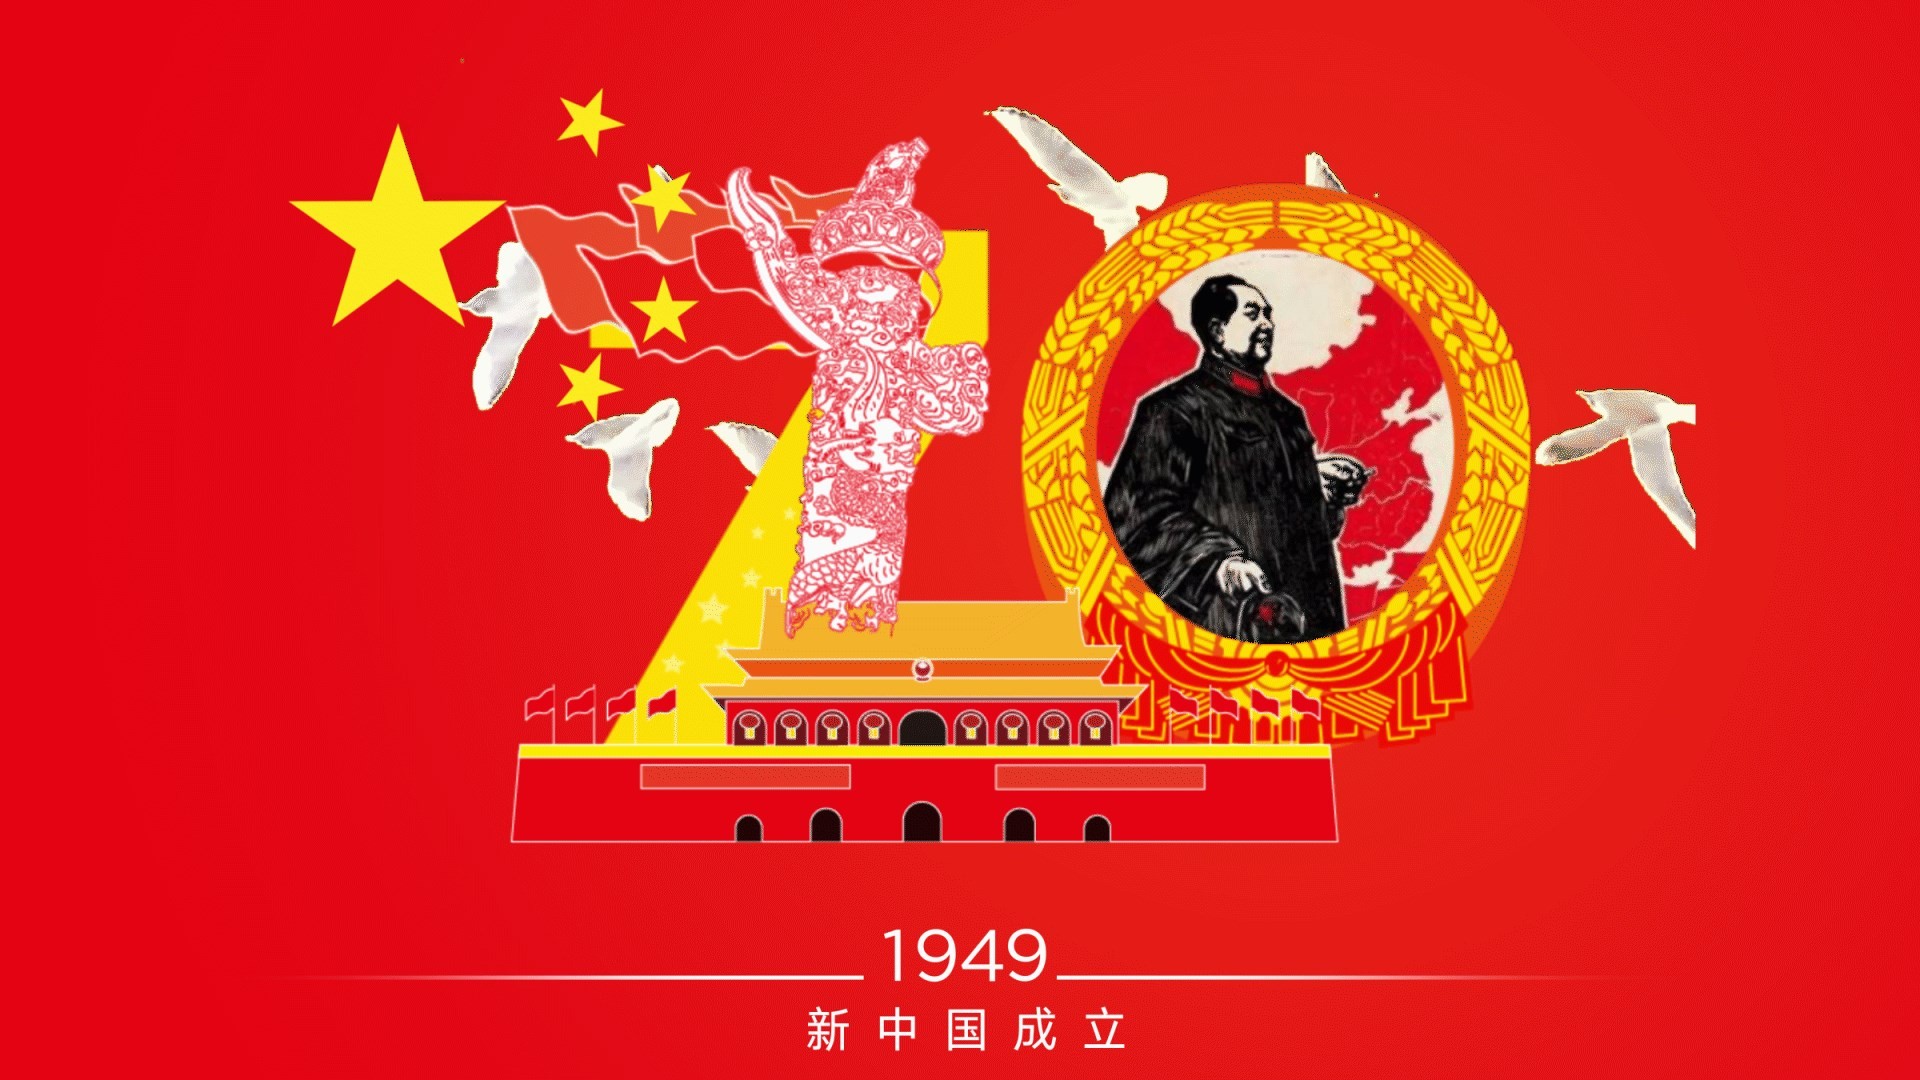 1949年 新中国成立.gif_snapshot_00.06_[2019.11.01_11.12.42]